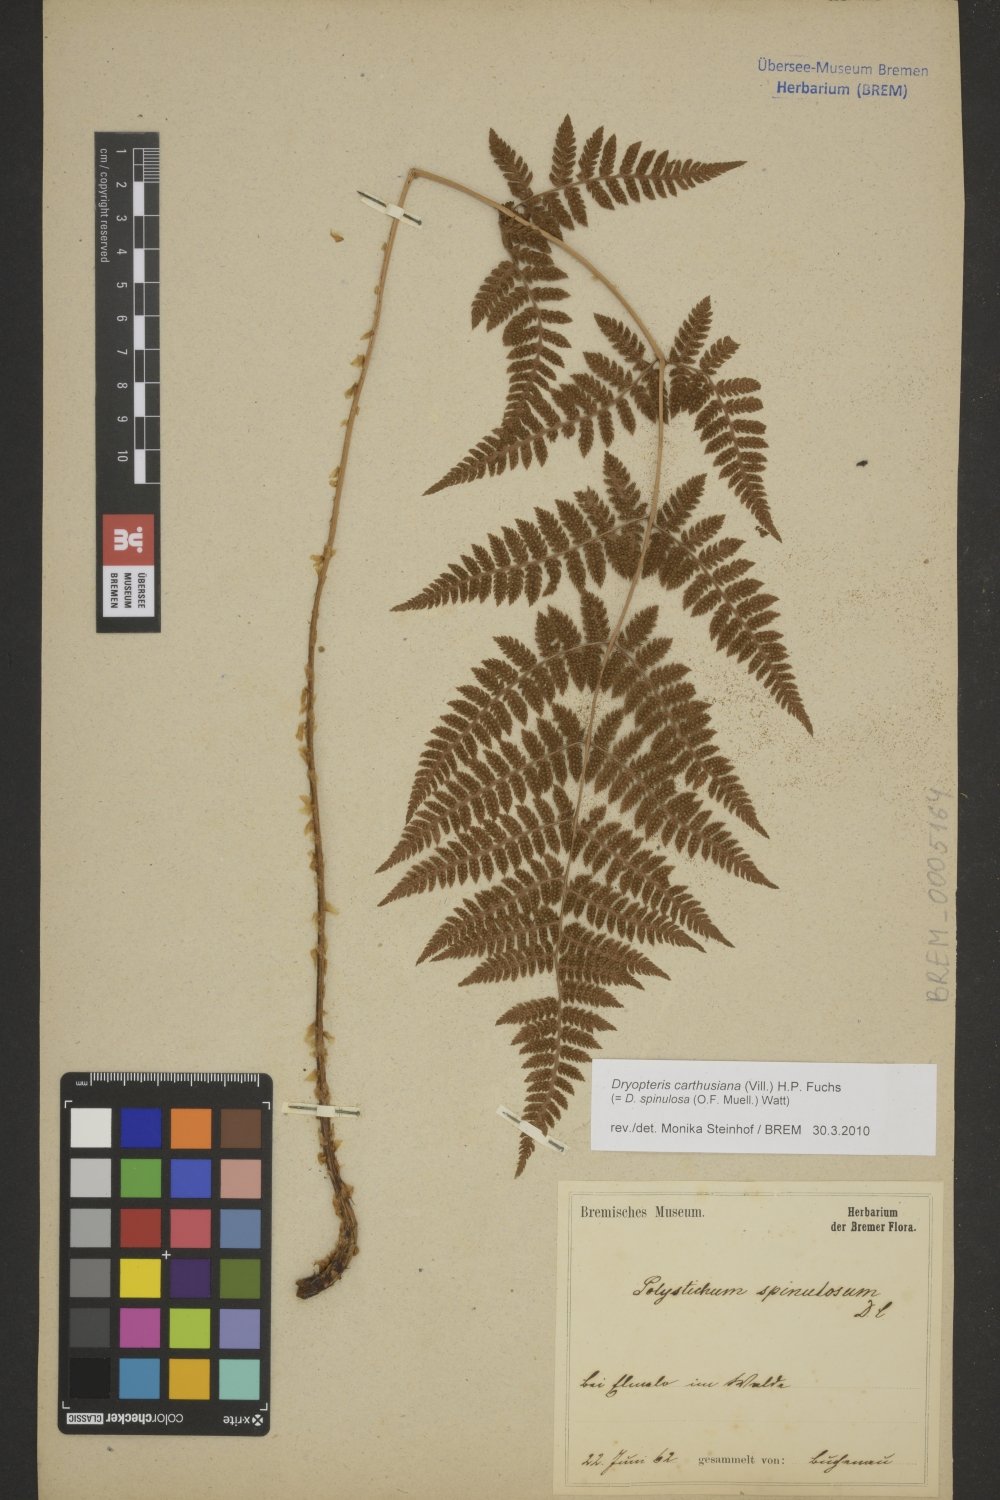 BREM_0005164 | Dryopteris carthusiana, Gewöhnlicher Dornfarn | Blatt (Wedel) (Übersee-Museum Bremen CC BY-SA)